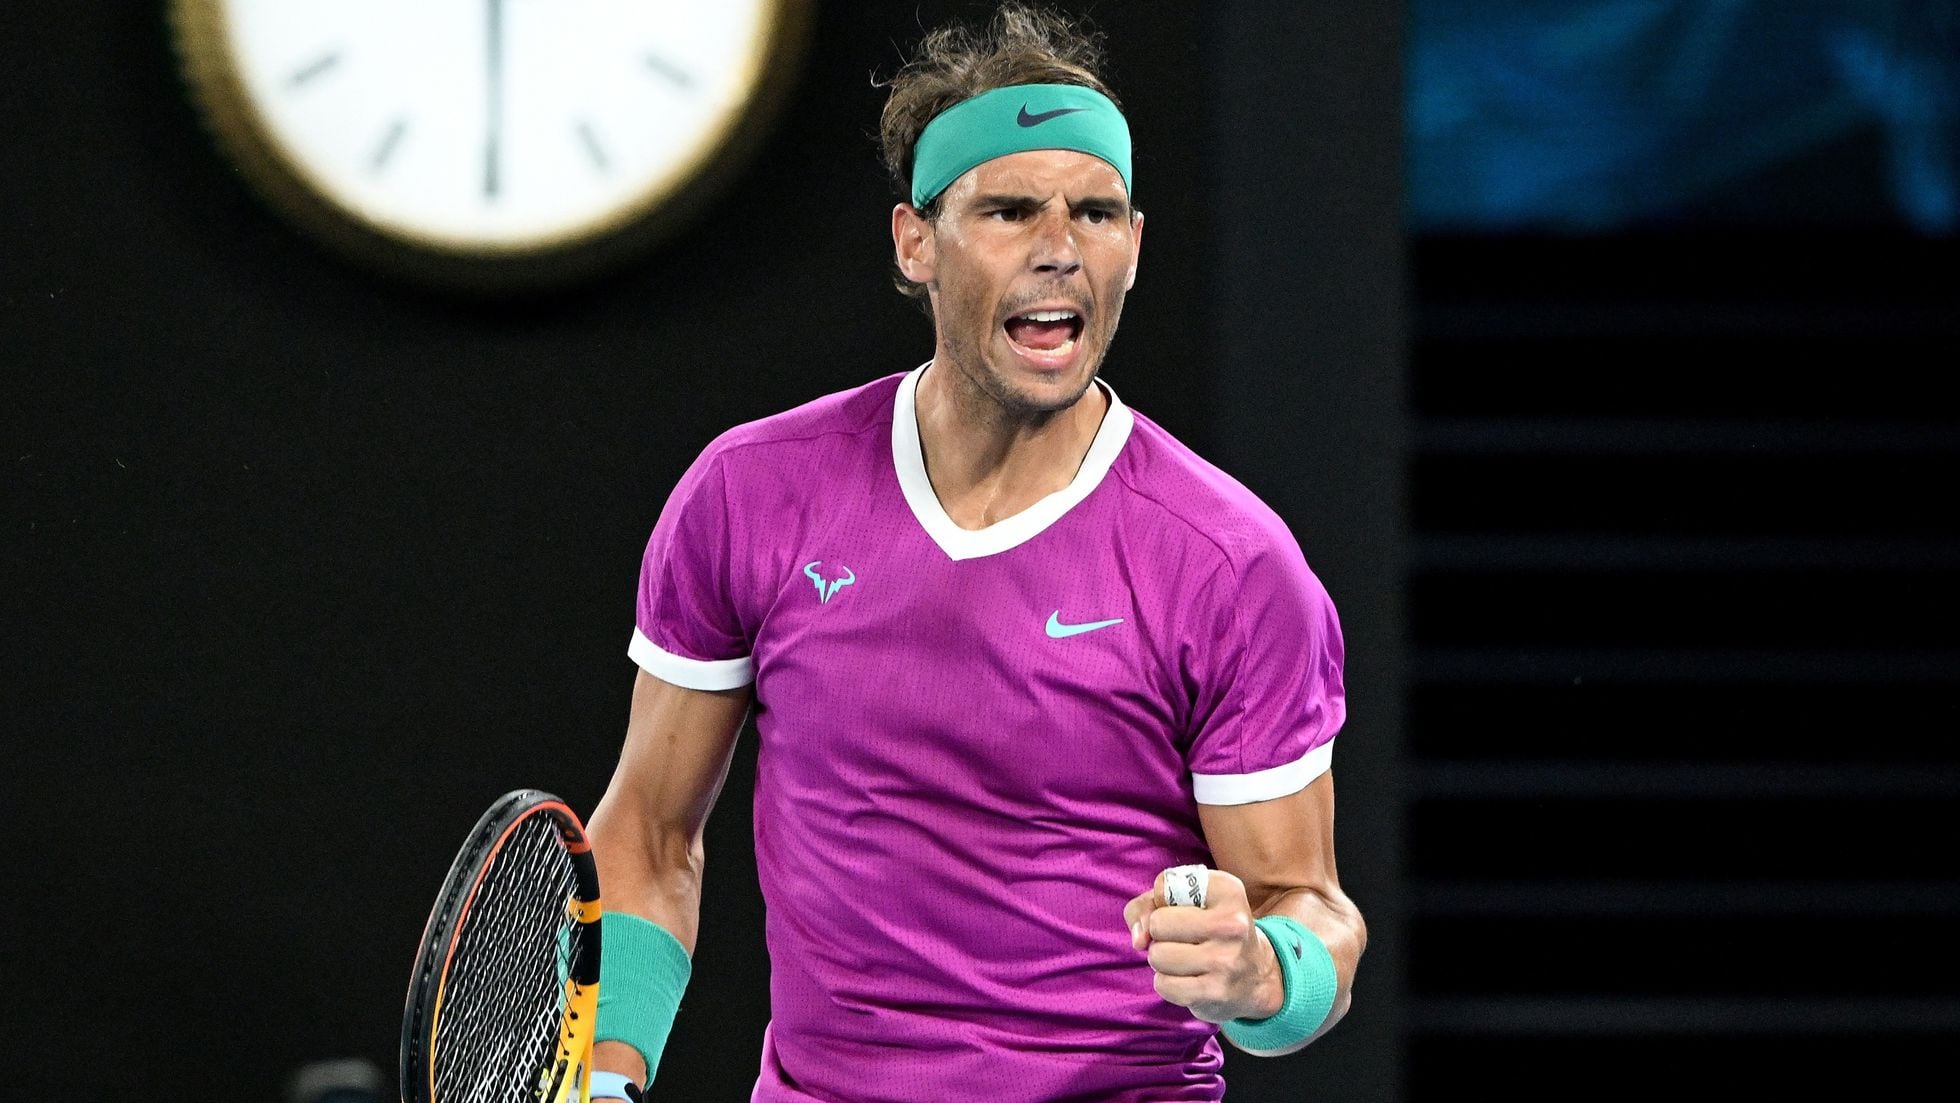 Así le hemos contado la victoria de Rafa Nadal el Open de Australia | Deportes | EL PAÍS